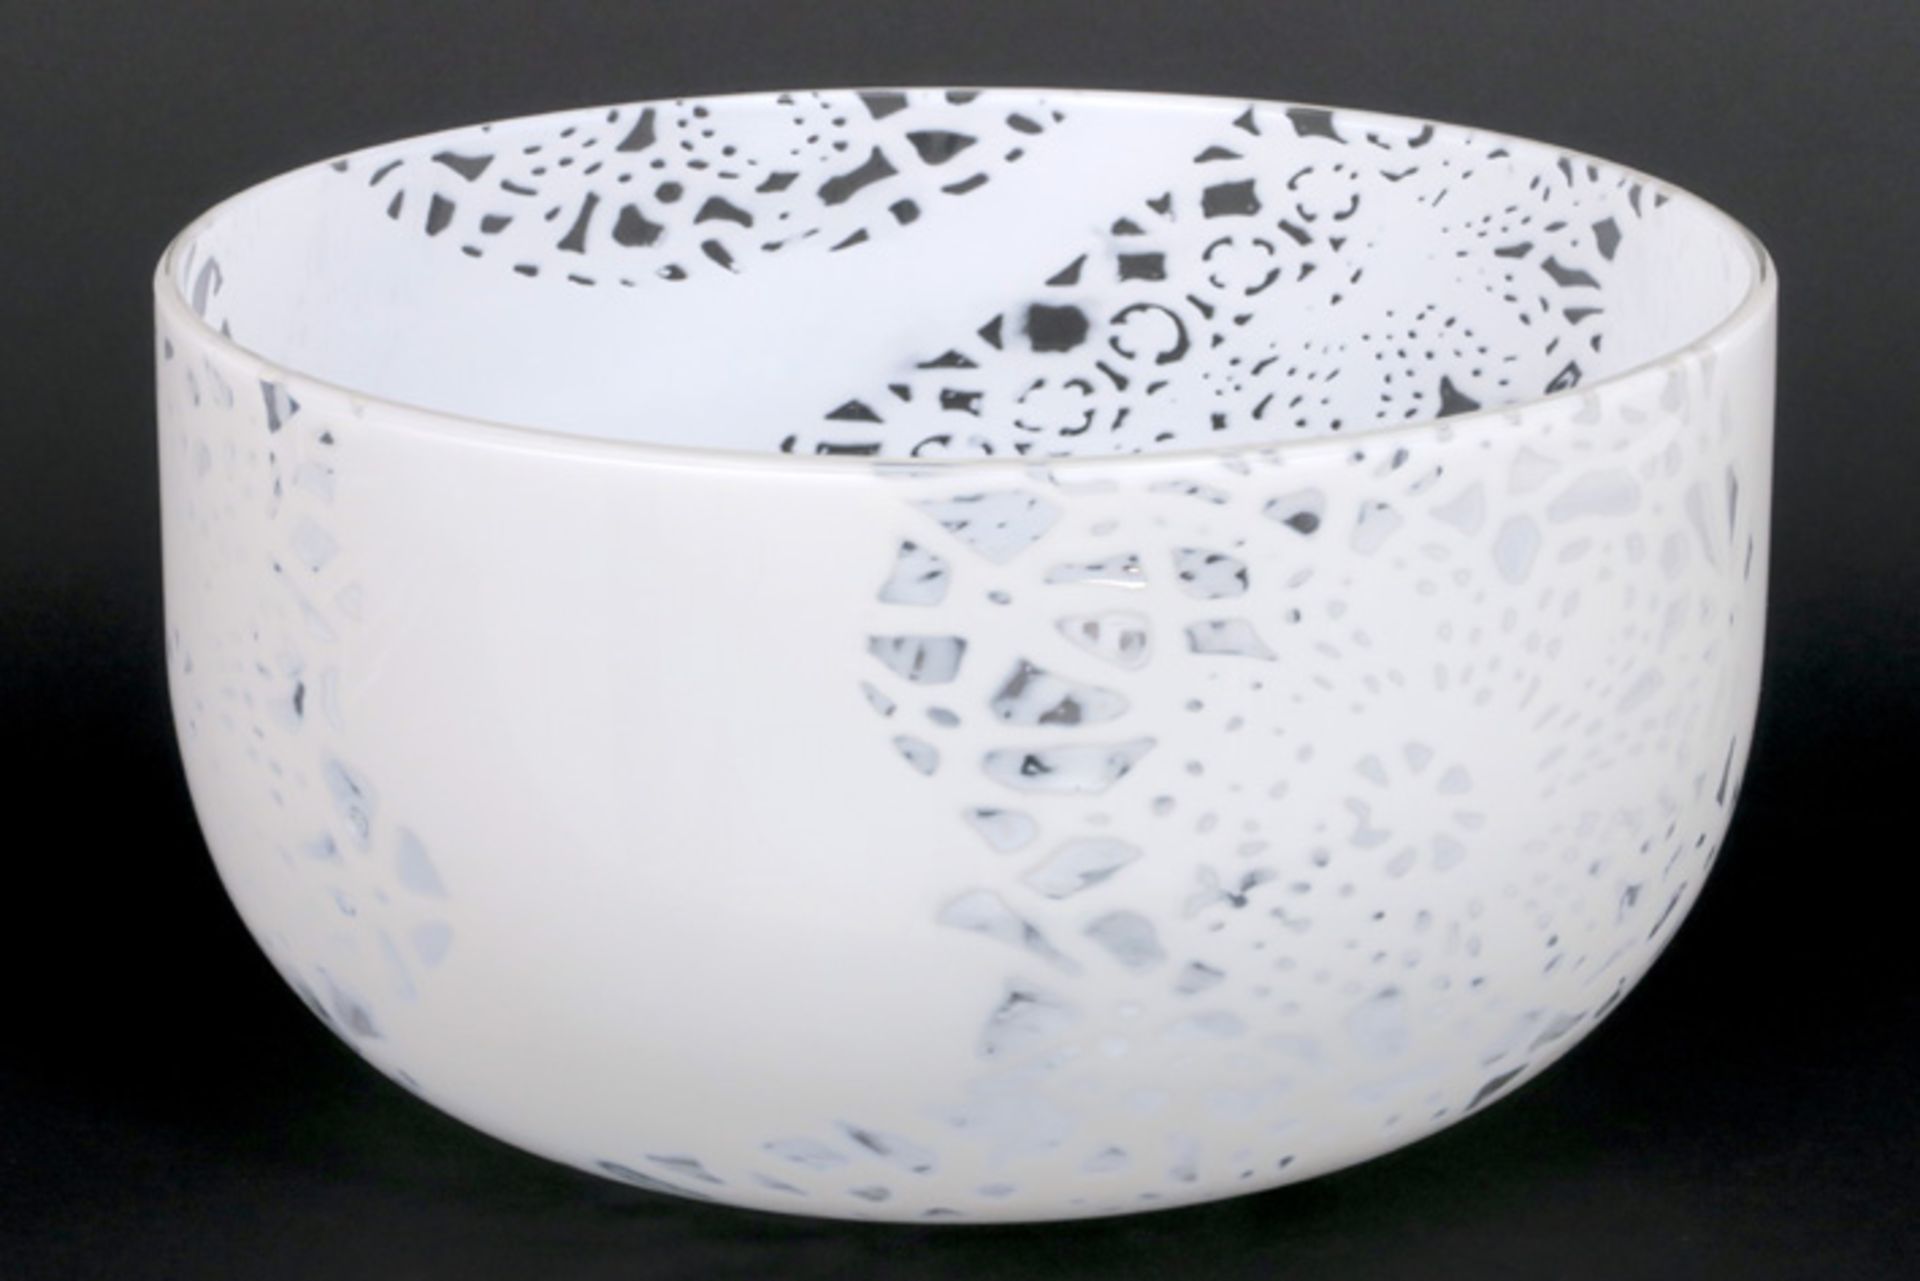 Ove Thorsen & Brigitee Carlsson "Merletto" design bowl in glass by Venini - signed (engraved) Venini